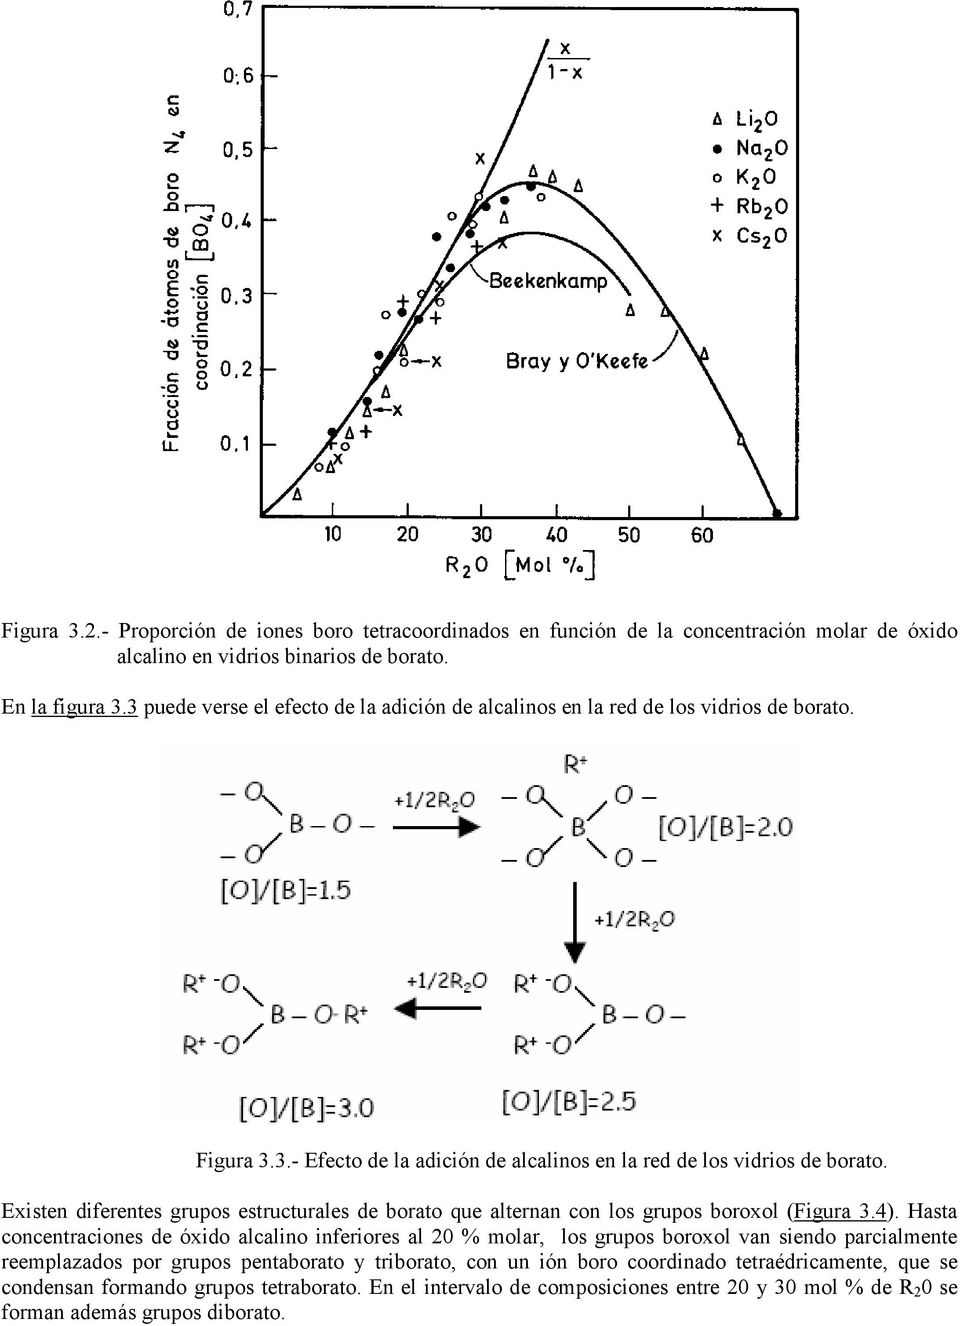 Existen diferentes grupos estructurales de borato que alternan con los grupos boroxol (Figura 3.4).